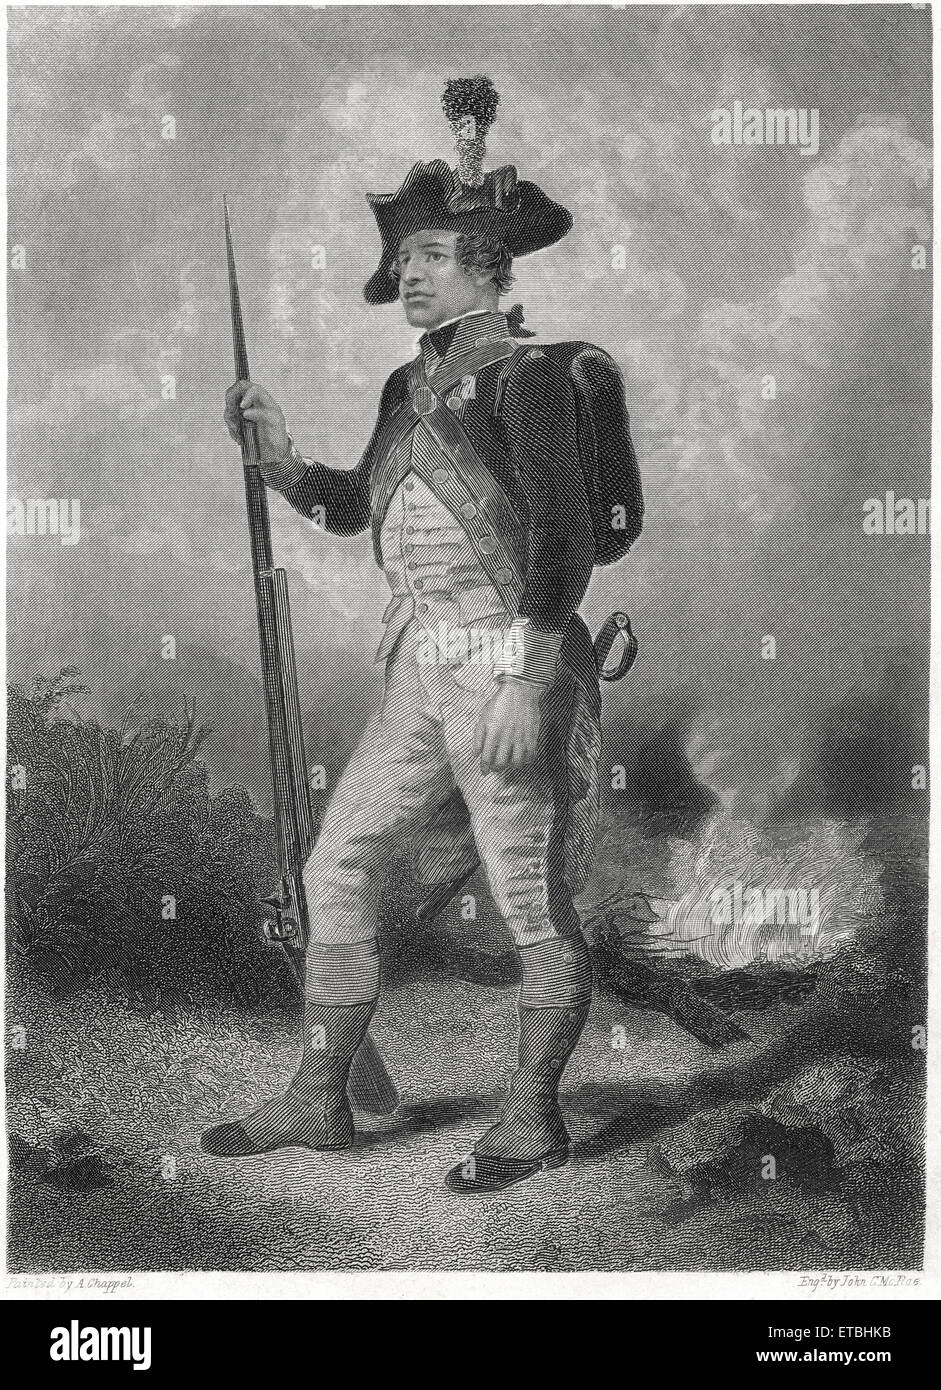 Kontinentale Soldat, Norden, gemalt von Alonzo Chappell, Kupferstich von John C. McRae, um 1820 Stockfoto